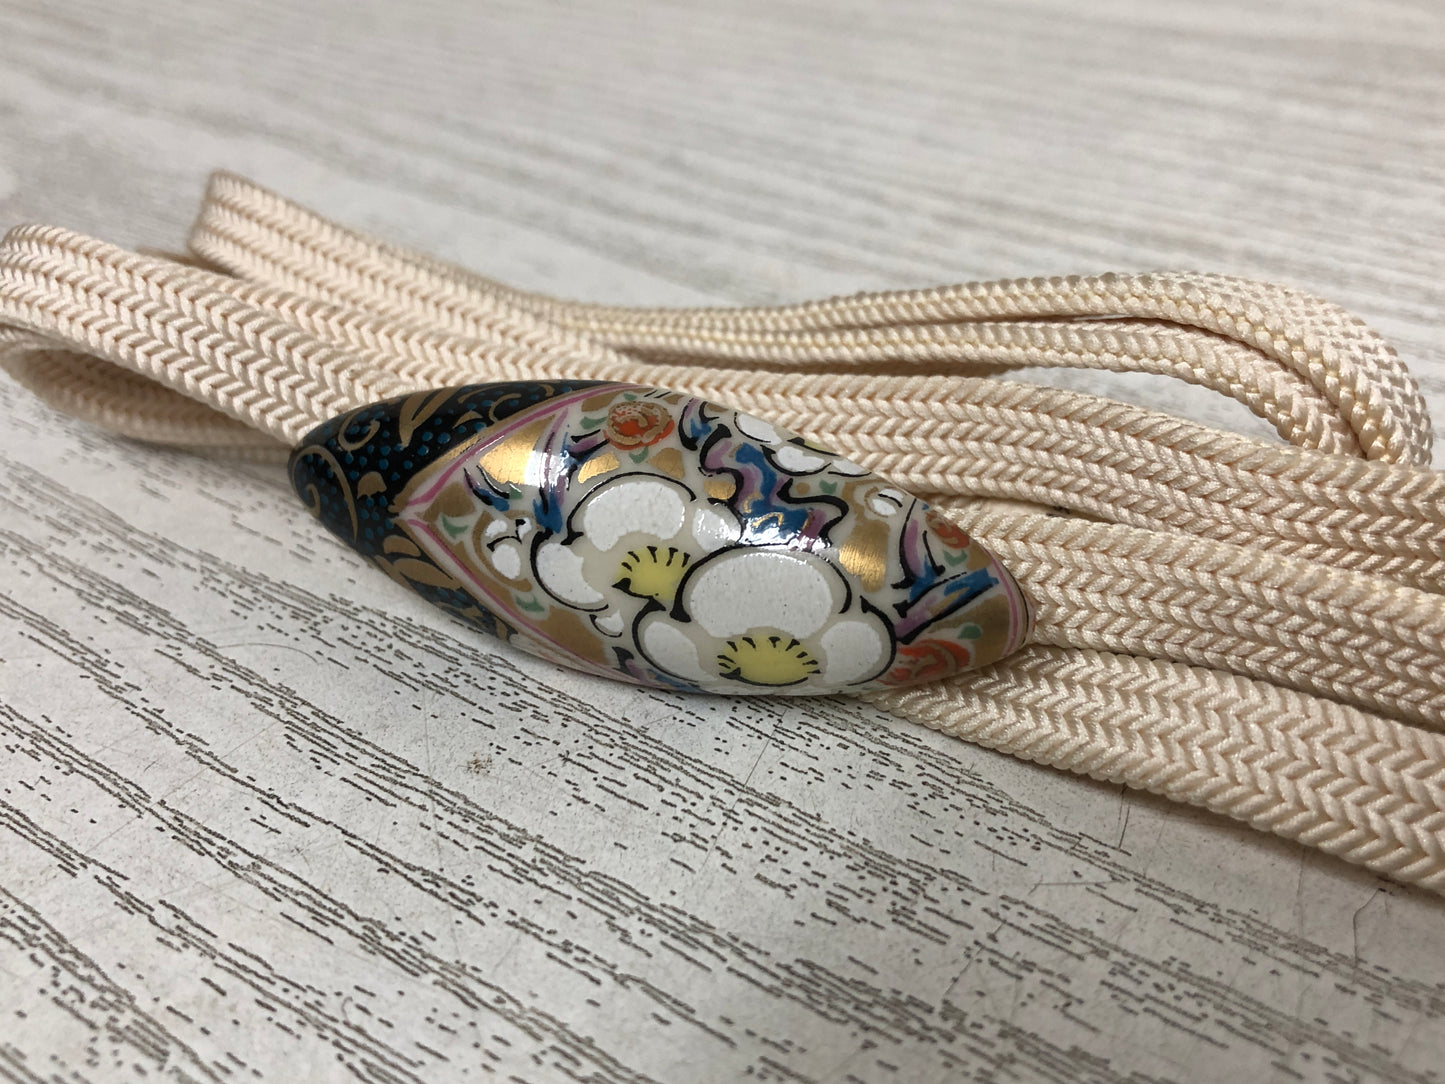 Y3843 OBIDOME Kutani-ware Sash Clip signed Flower Japan Kimono accessory antique